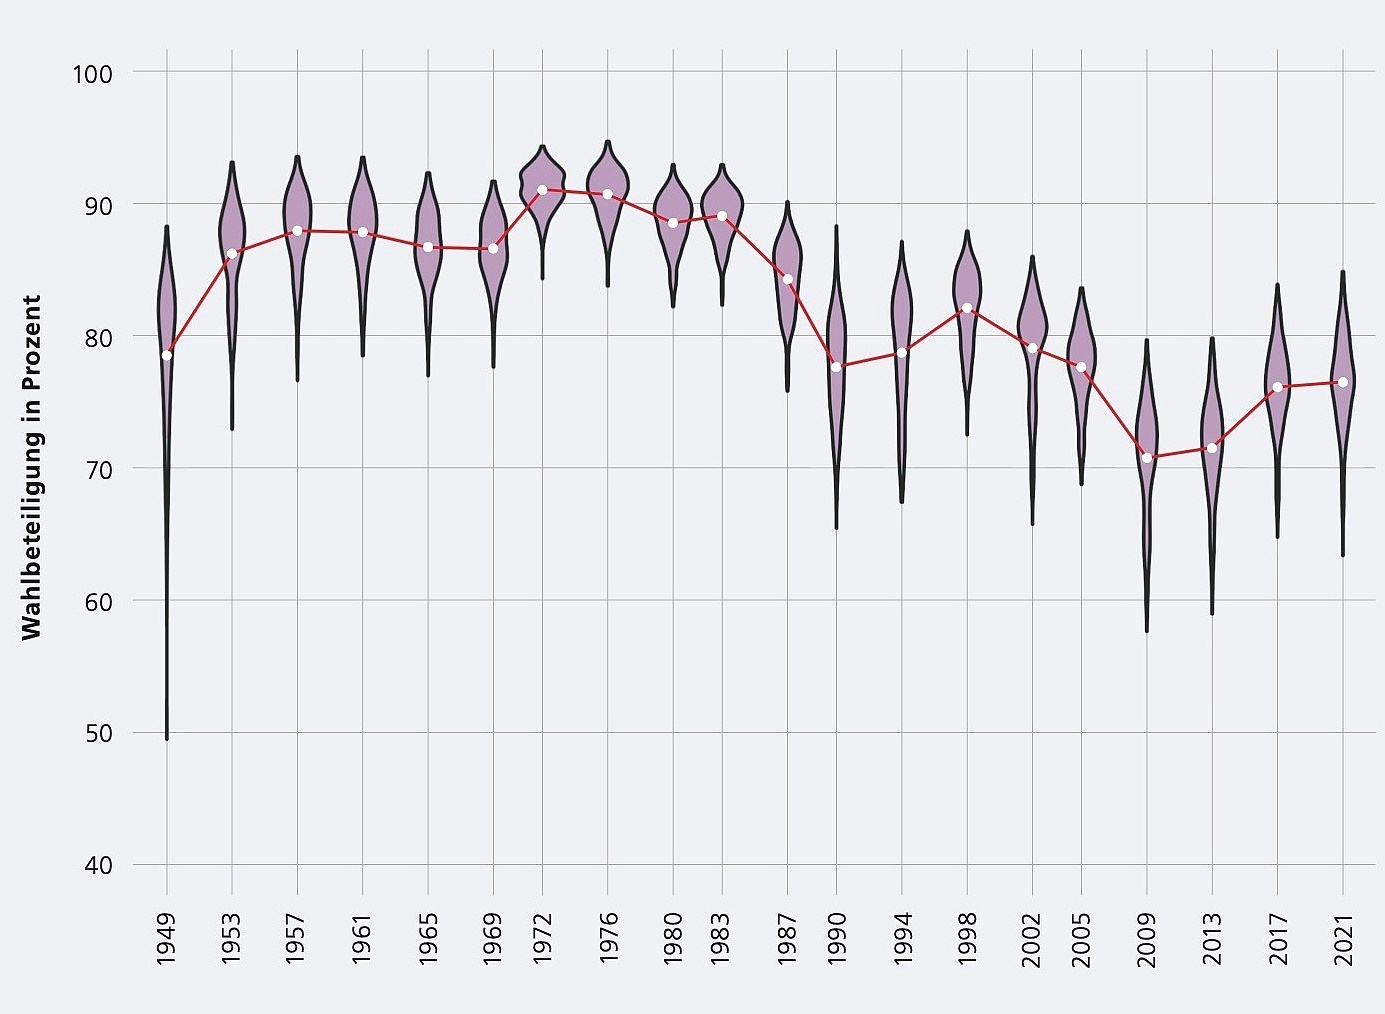 Darstellung der Wahlbeteiligung in Prozent auf der Zeitachse von 1949 bis 2021